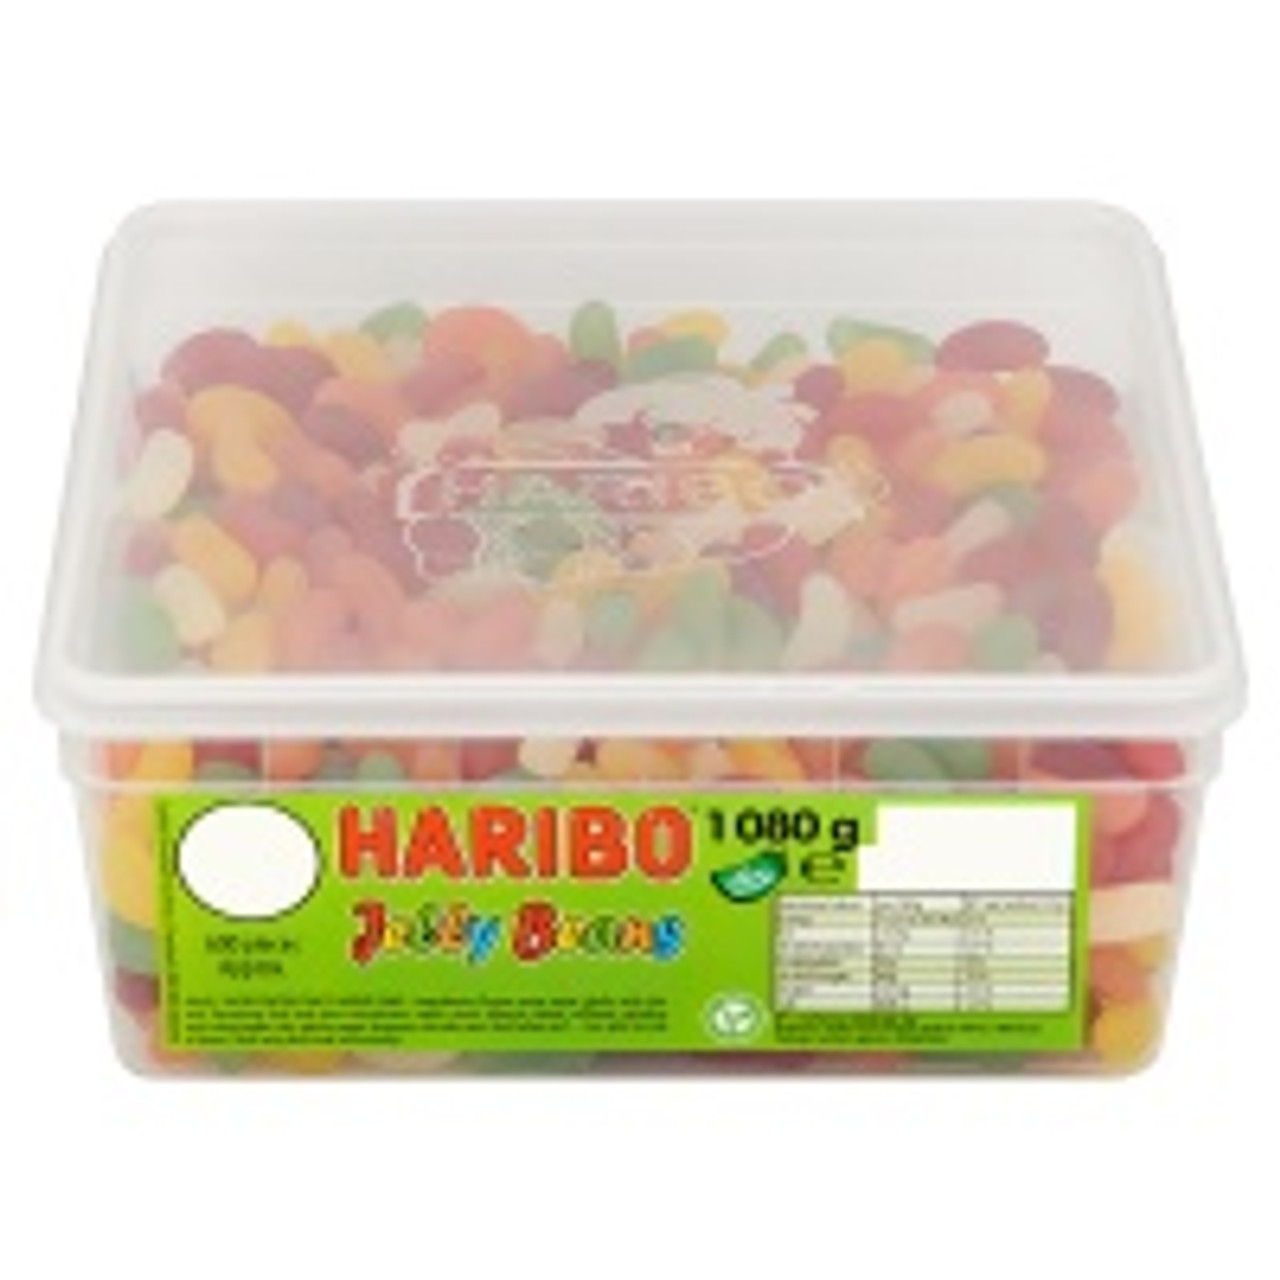 Haribo Jelly Beans 1080g - Caletoni - International Grocer